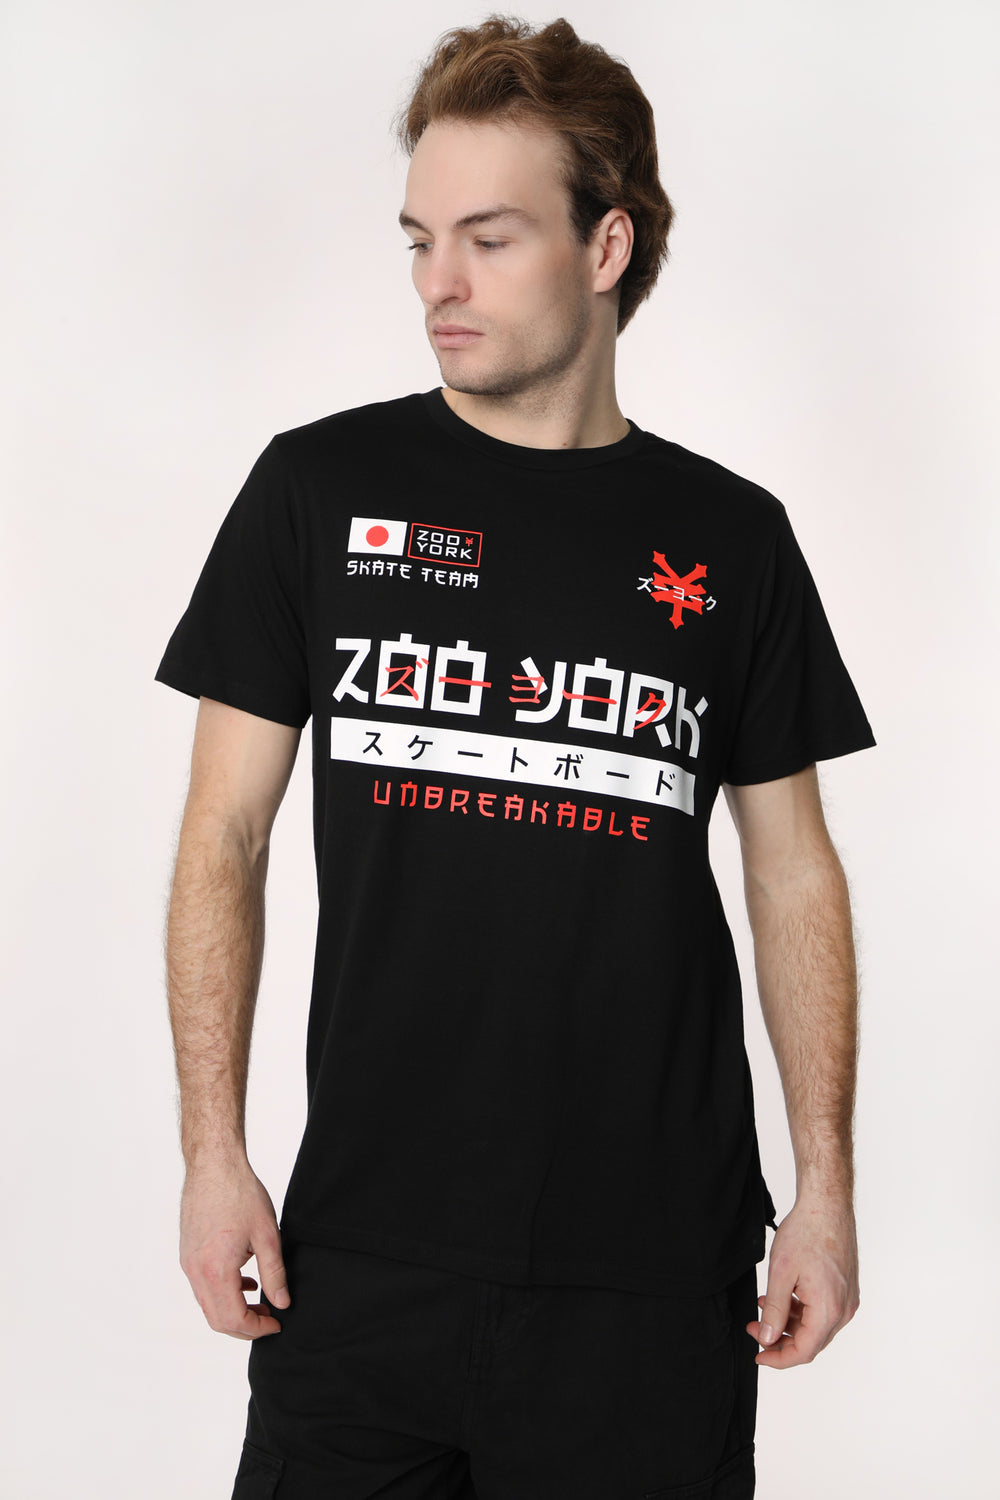 T-Shirt Imprimé Logo Japan Zoo York Homme T-Shirt Imprimé Logo Japan Zoo York Homme